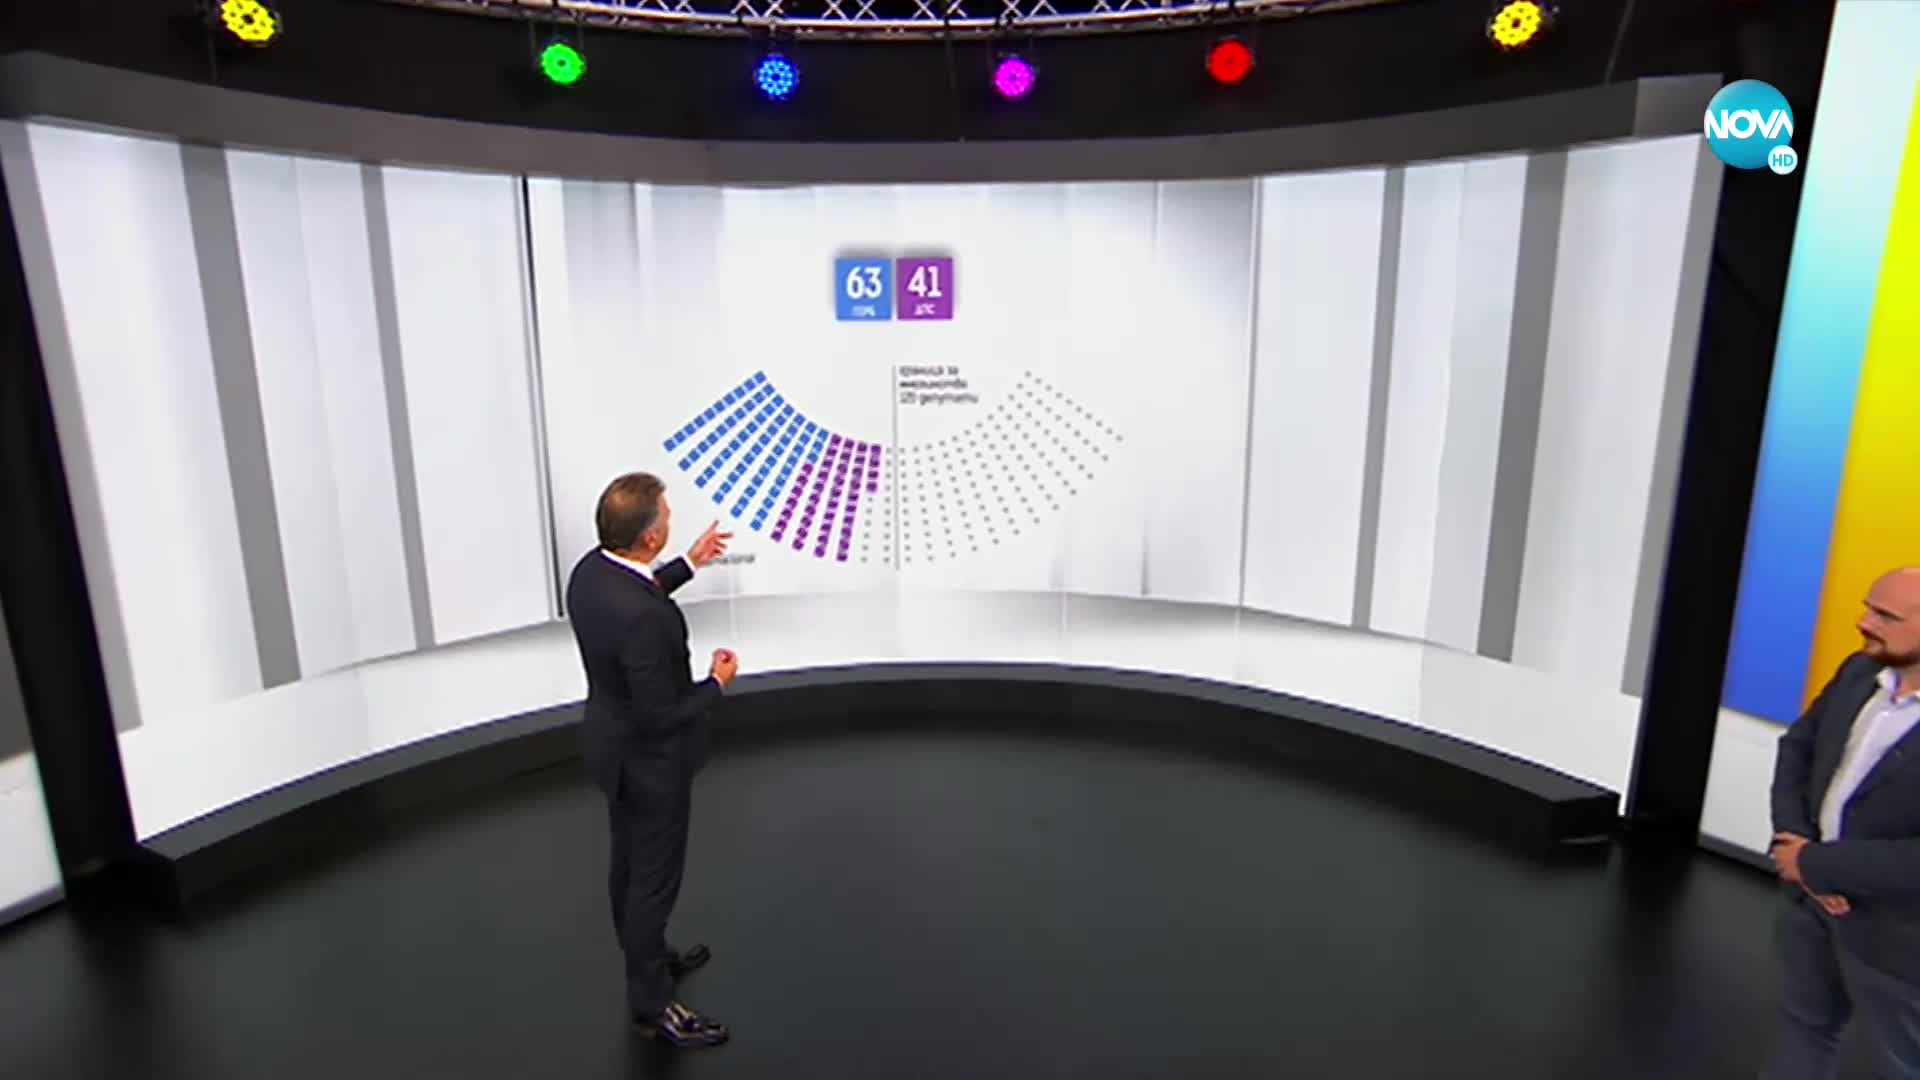 Кой колко места получава в парламента според резултатите от паралелното преброяване